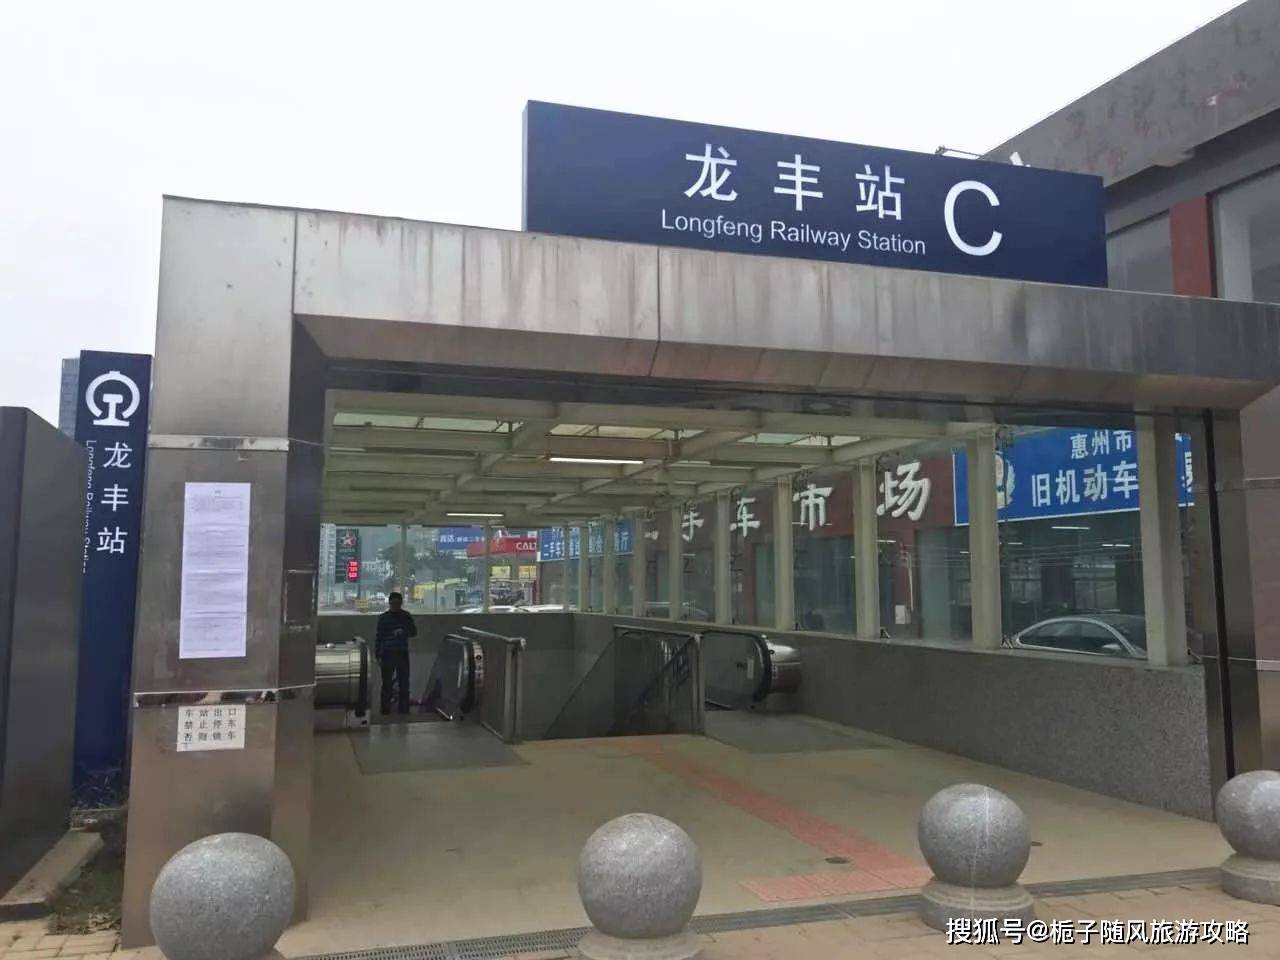 原创广惠城际铁路在惠州境内的8座火车站一览